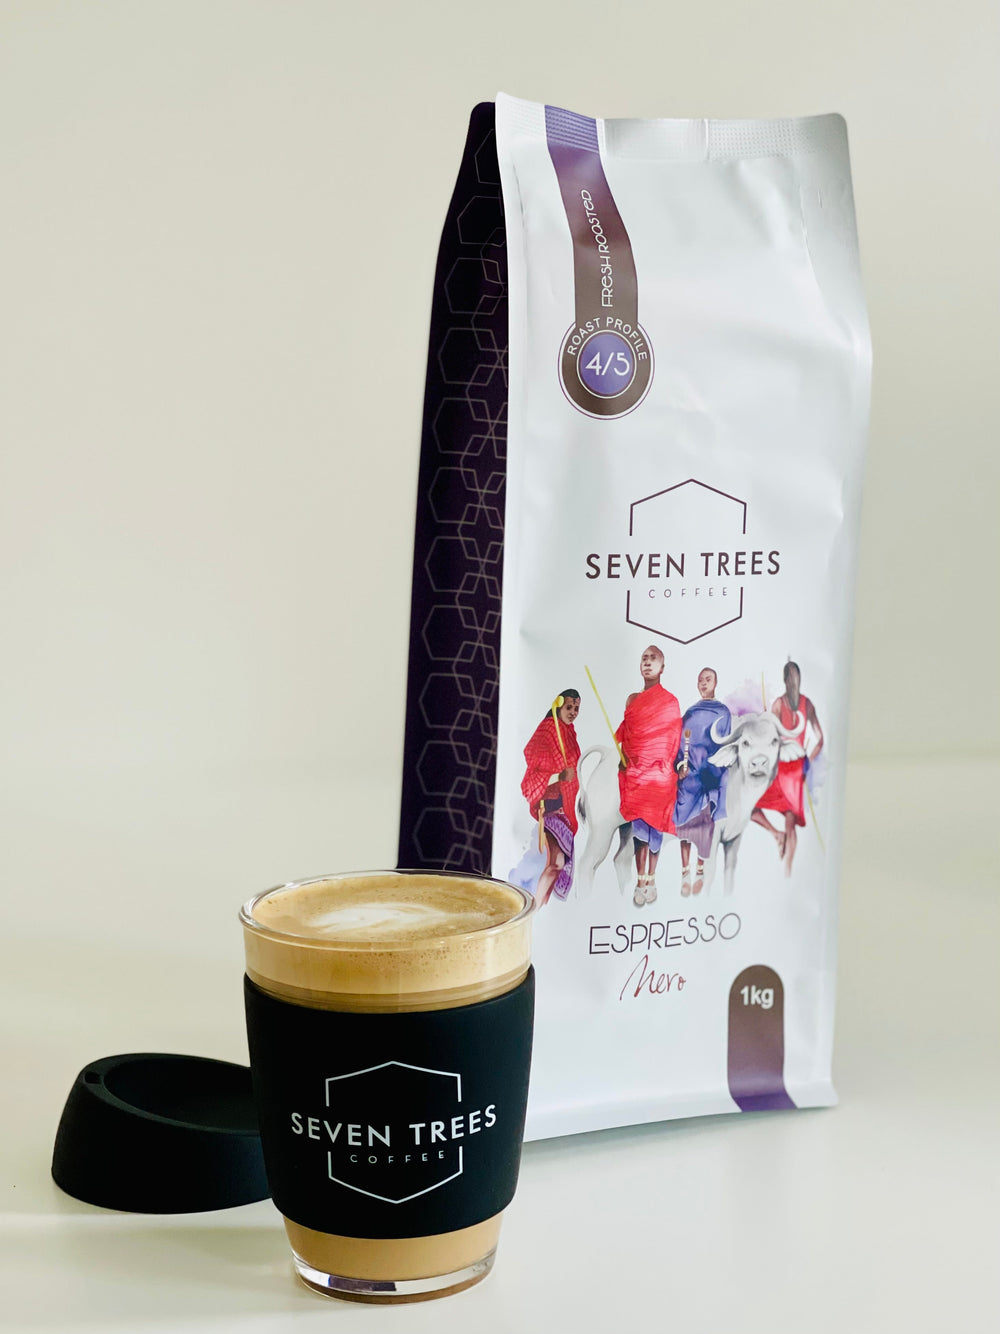 Espresso Nero Seven Trees Coffee